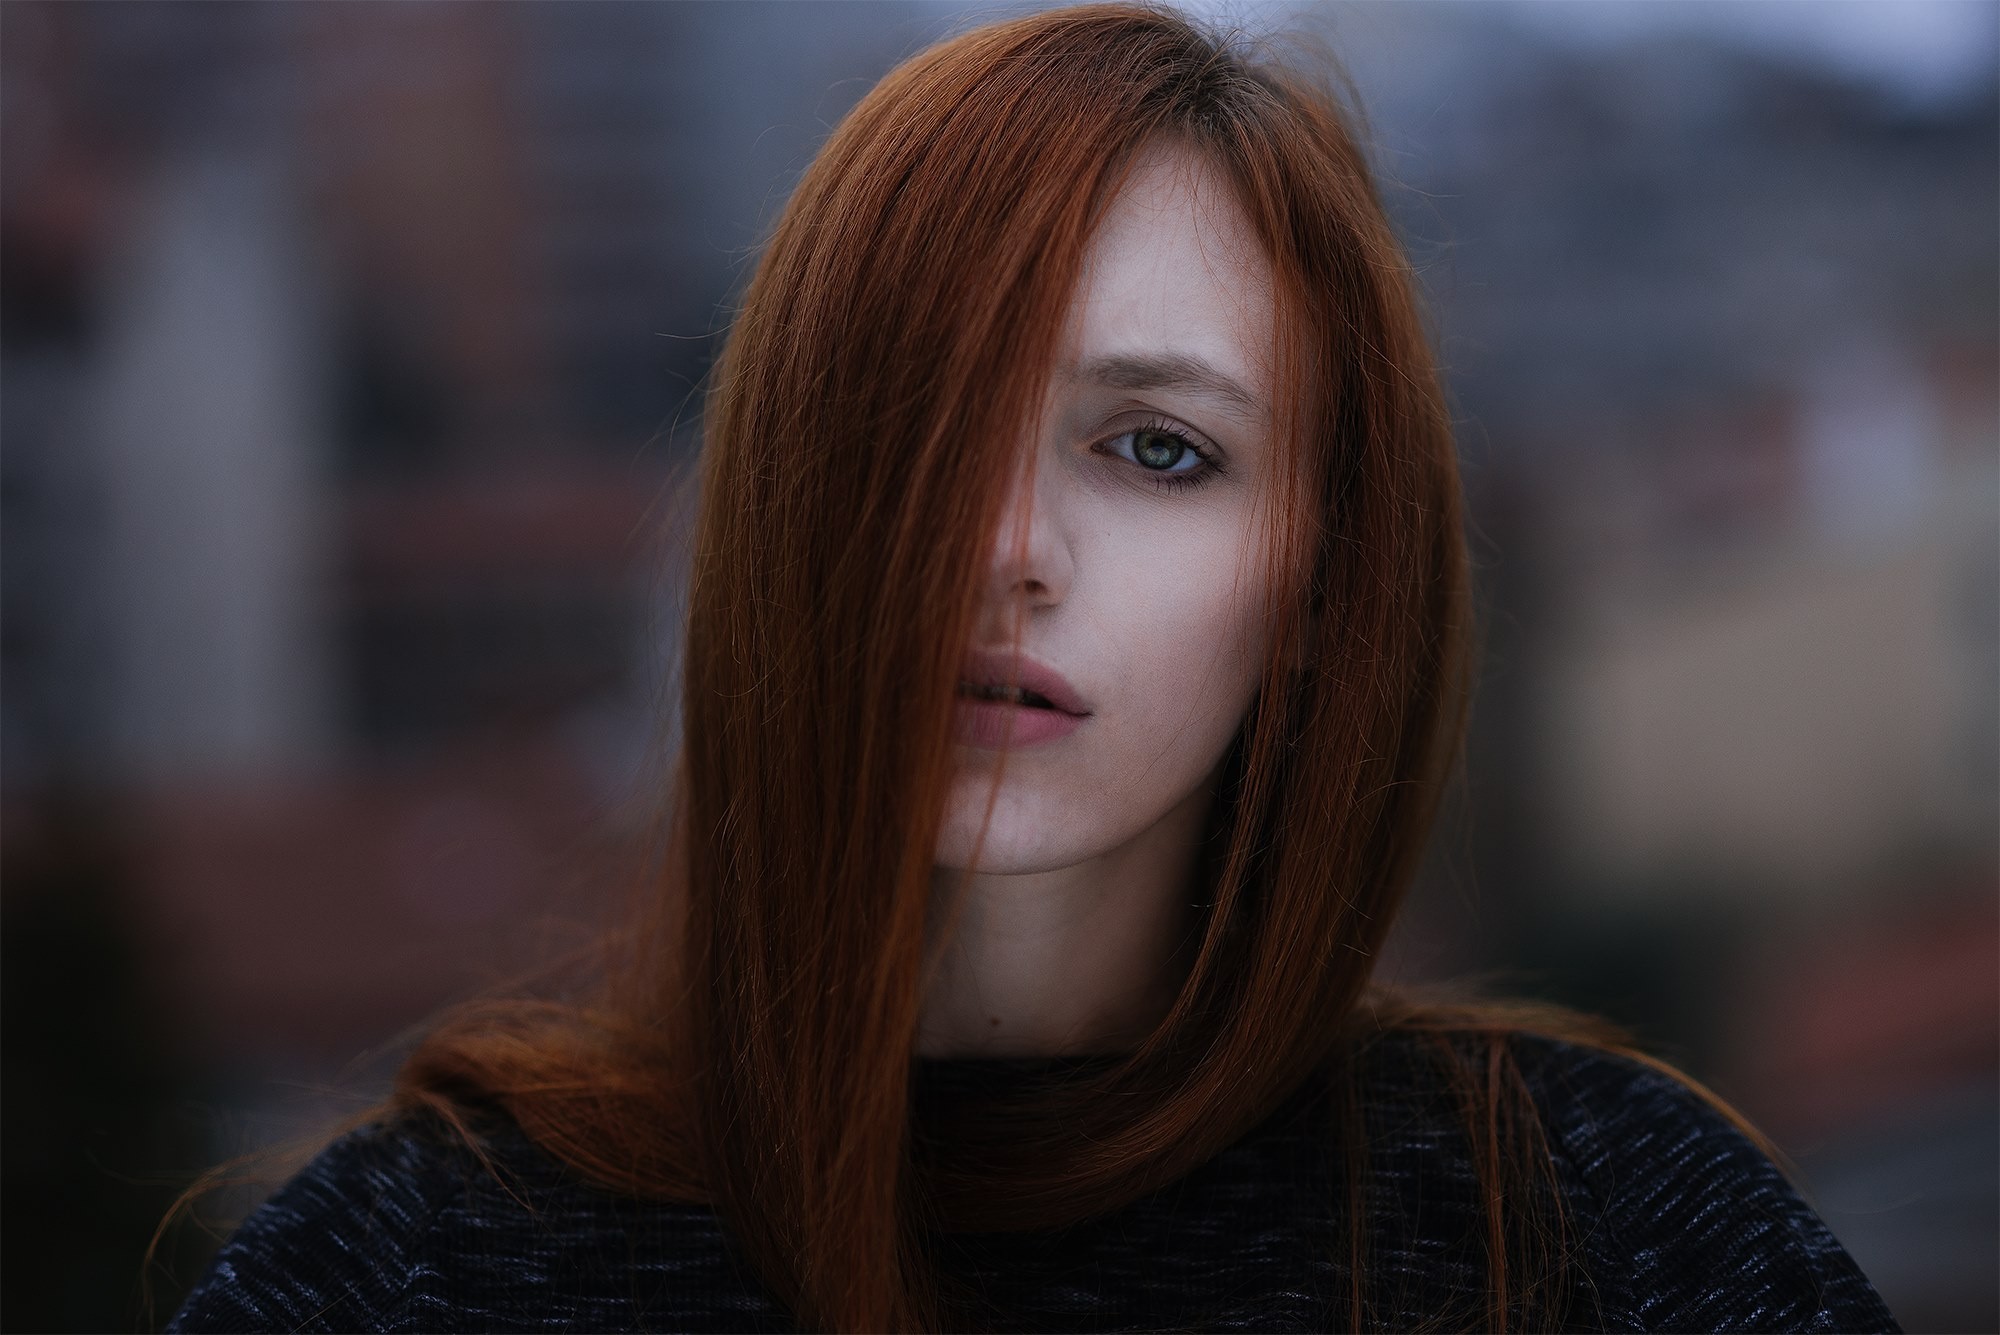 People 2000x1335 women face redhead portrait hair in face depth of field Michael Färber